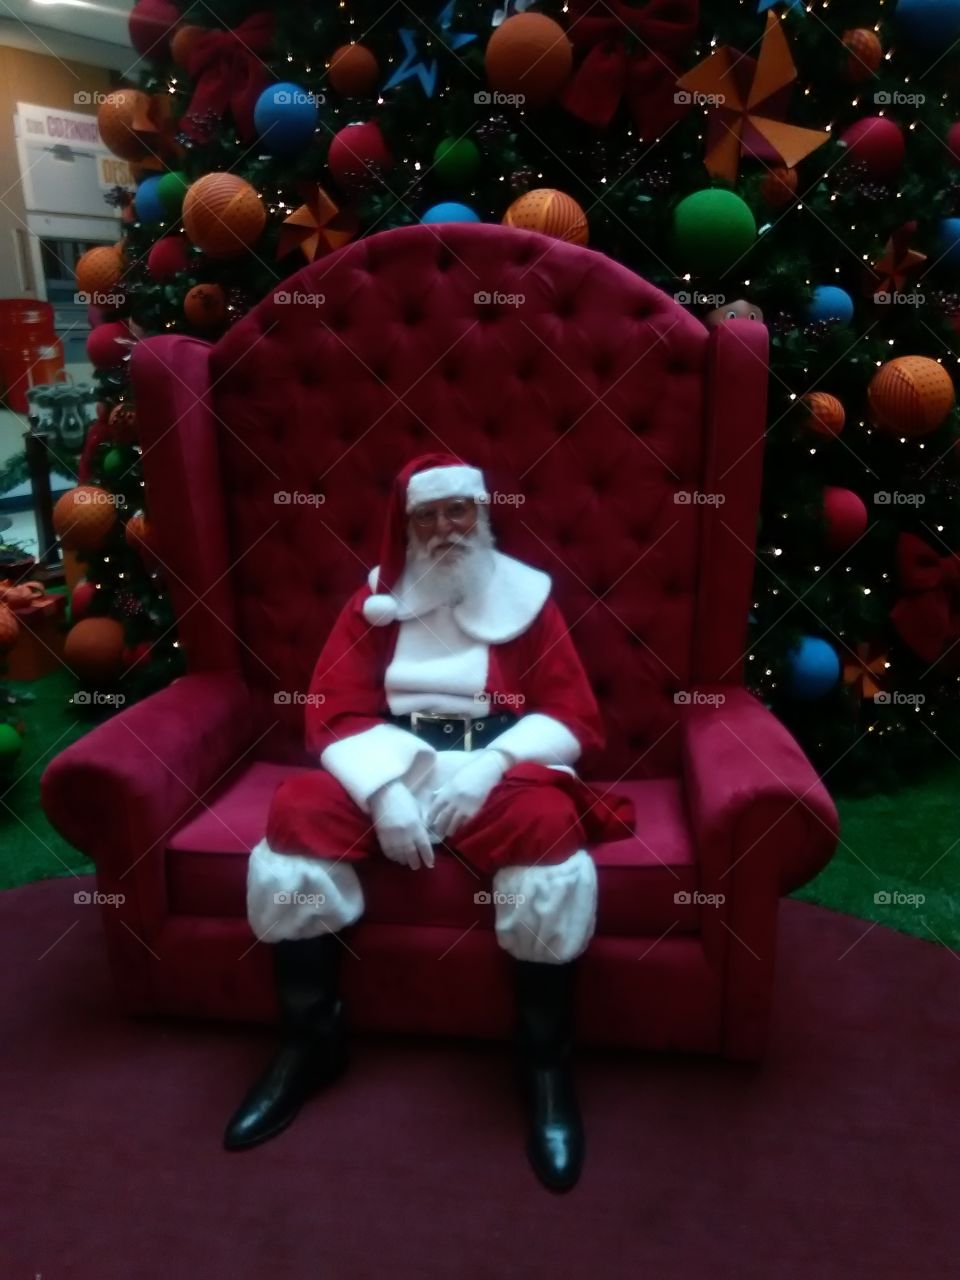 Papai Noel